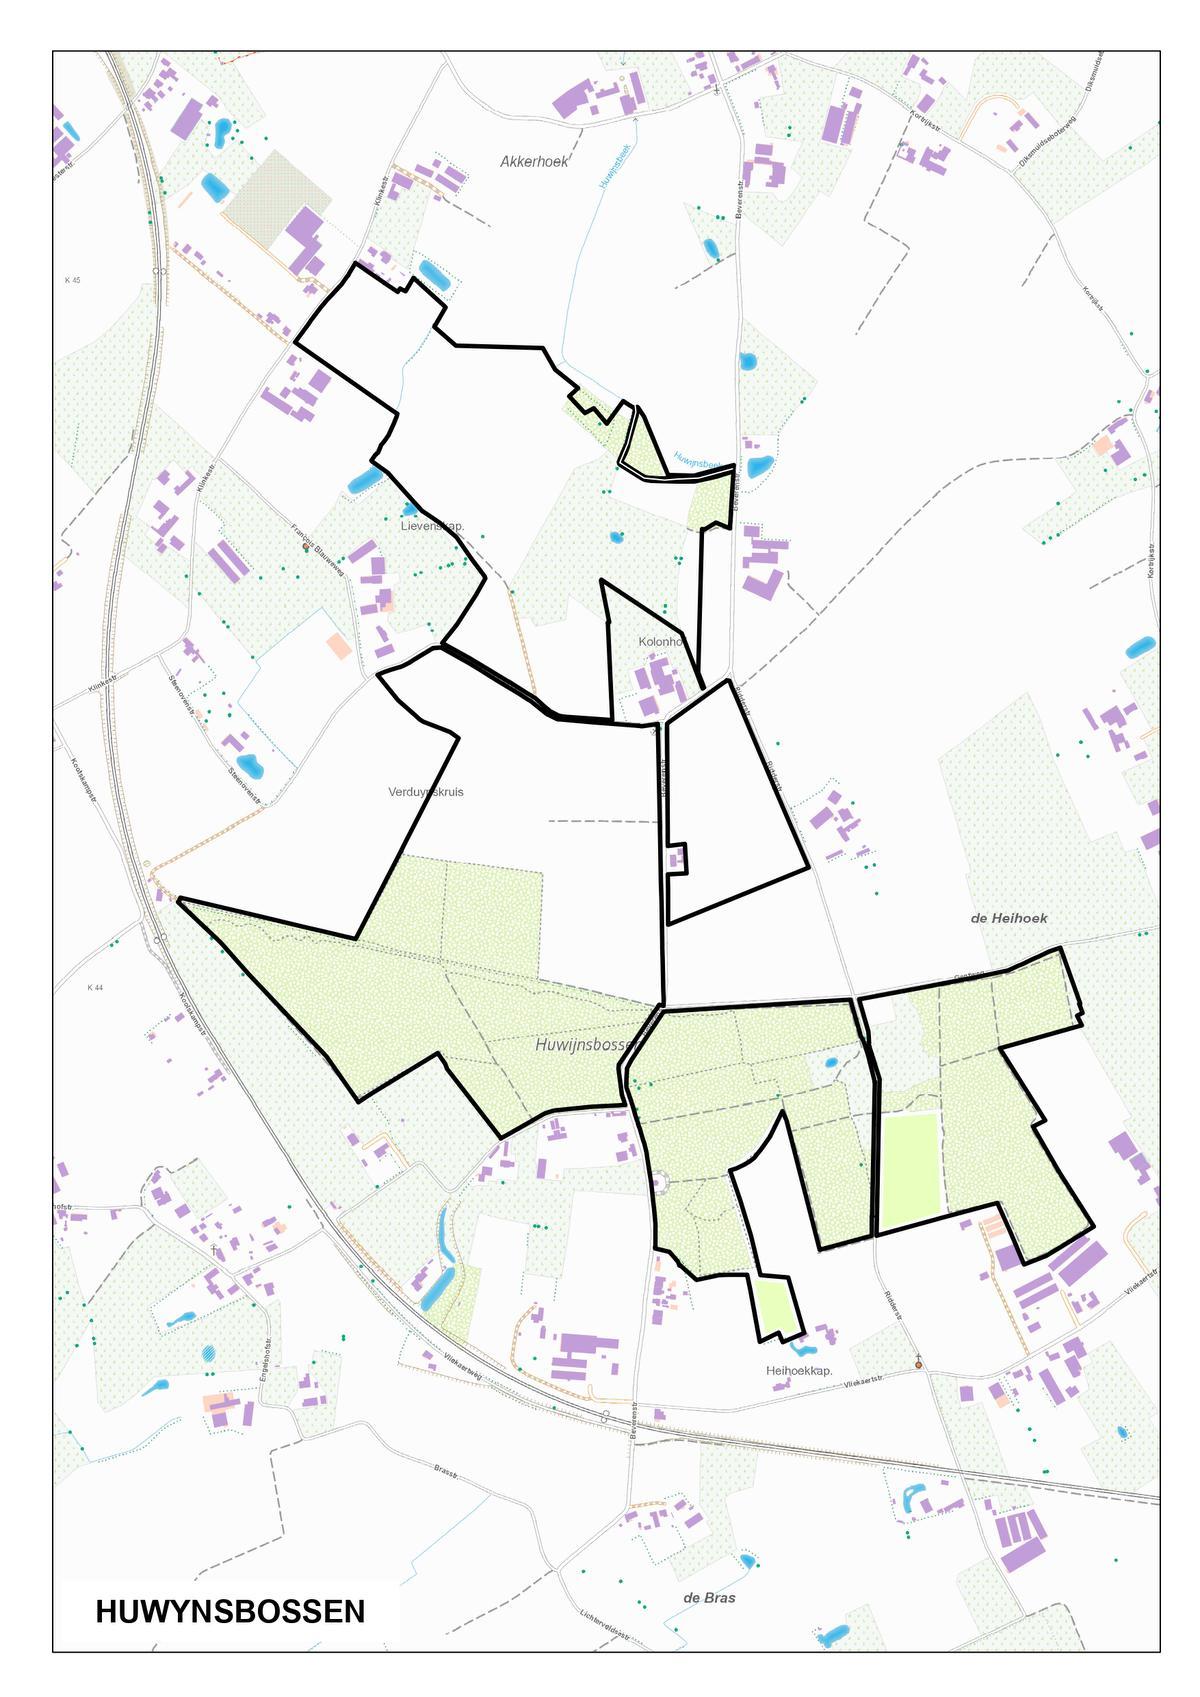 Na de aankoop van 33 hectare grond beschikt ANB nu over een totaal gebied van 68 hectare. In het groen zien we de bestaande Huwynsbossen.